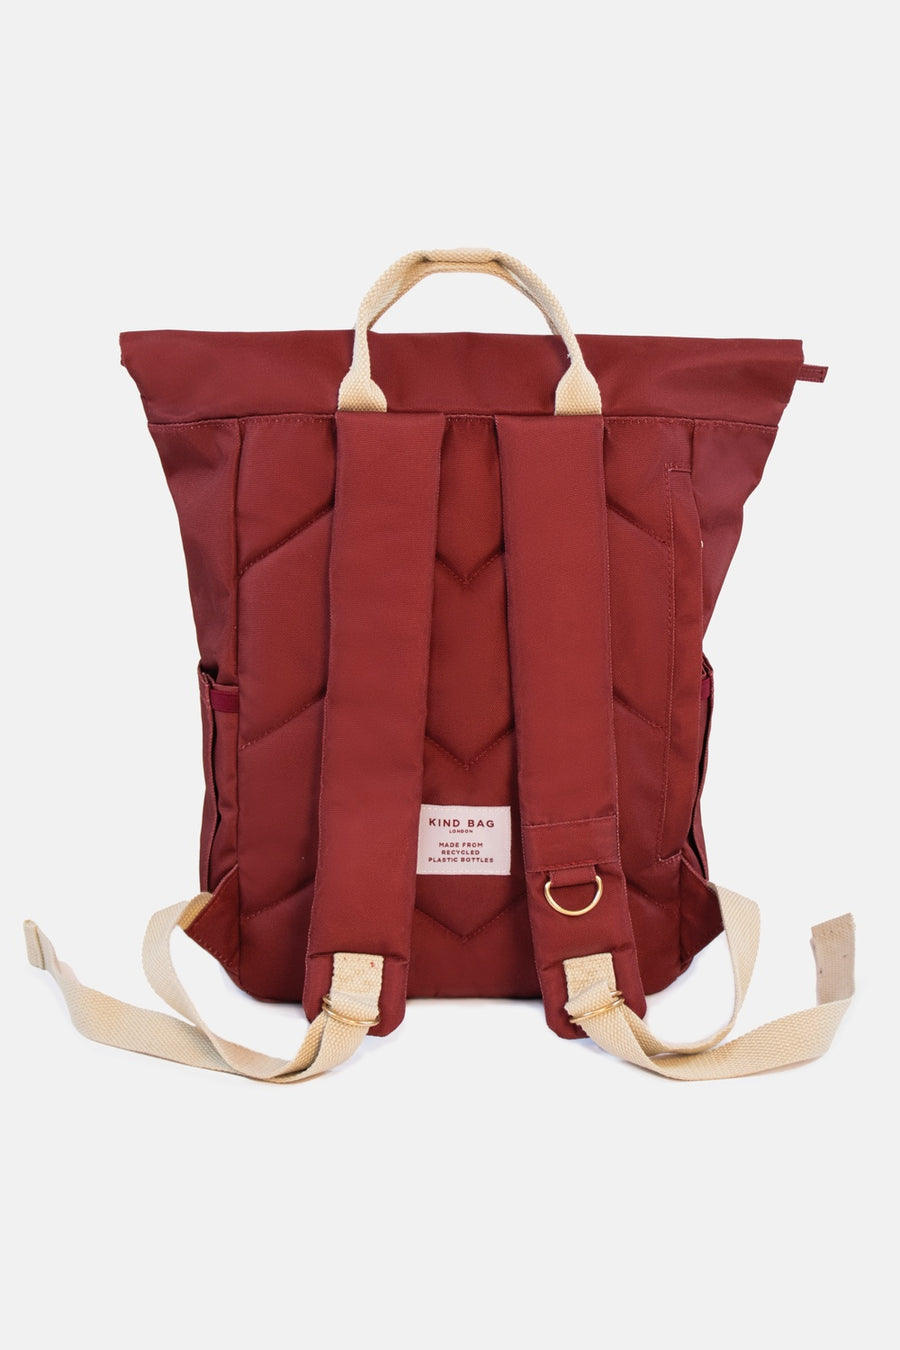 Burgundy | “Hackney” 2.0 Backpack | Medium